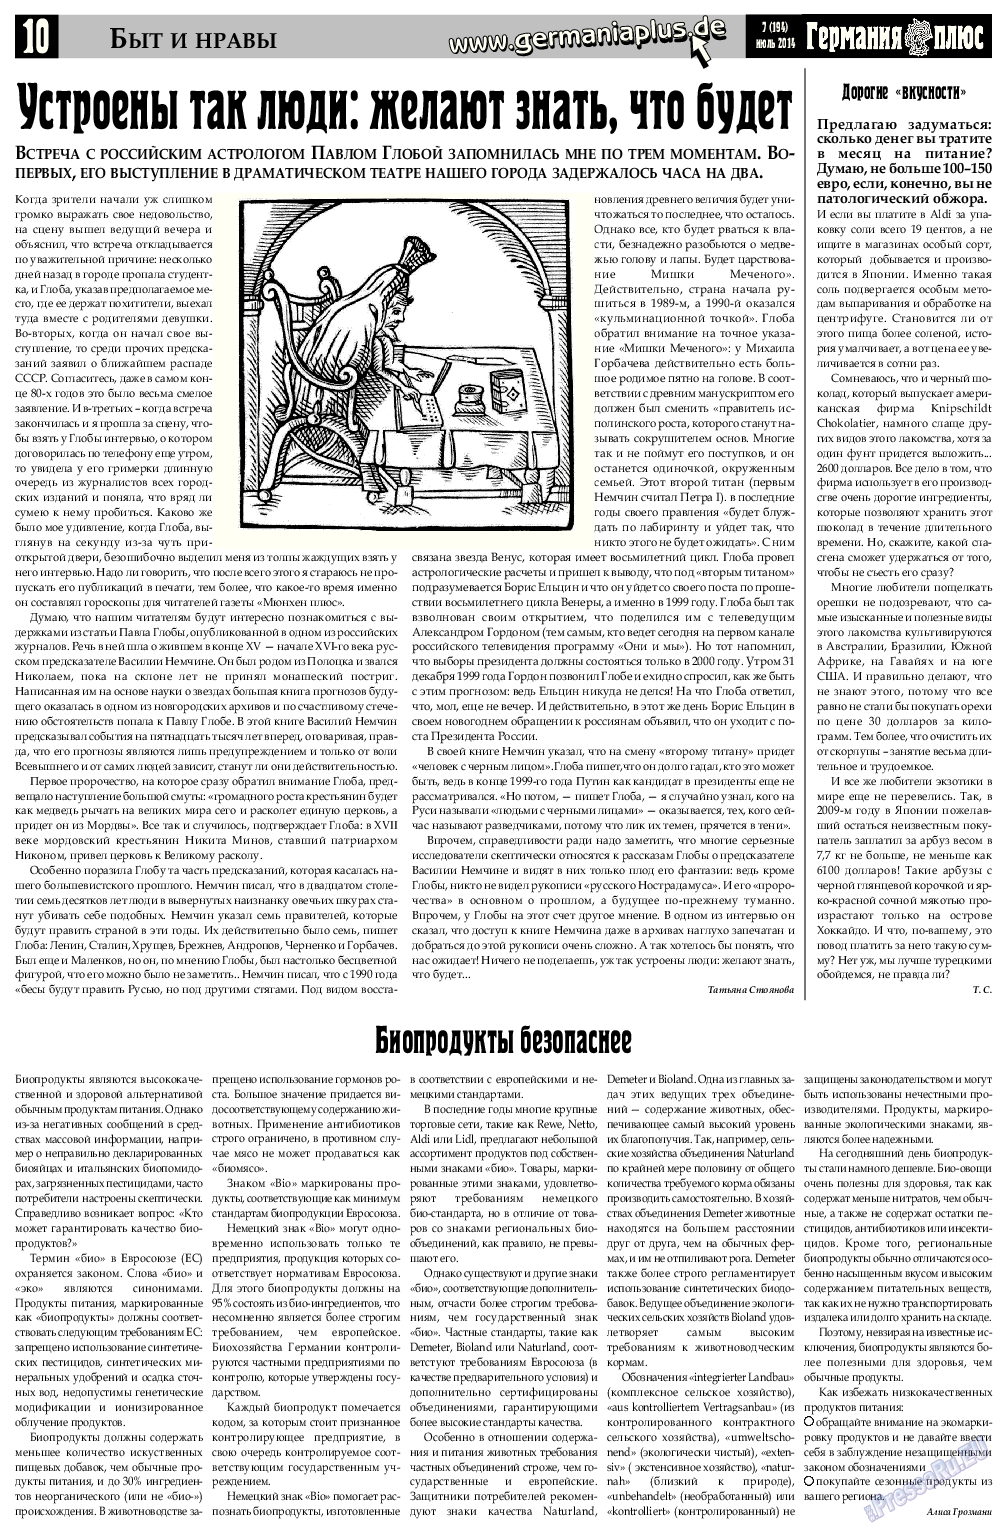 Германия плюс (газета). 2014 год, номер 7, стр. 10